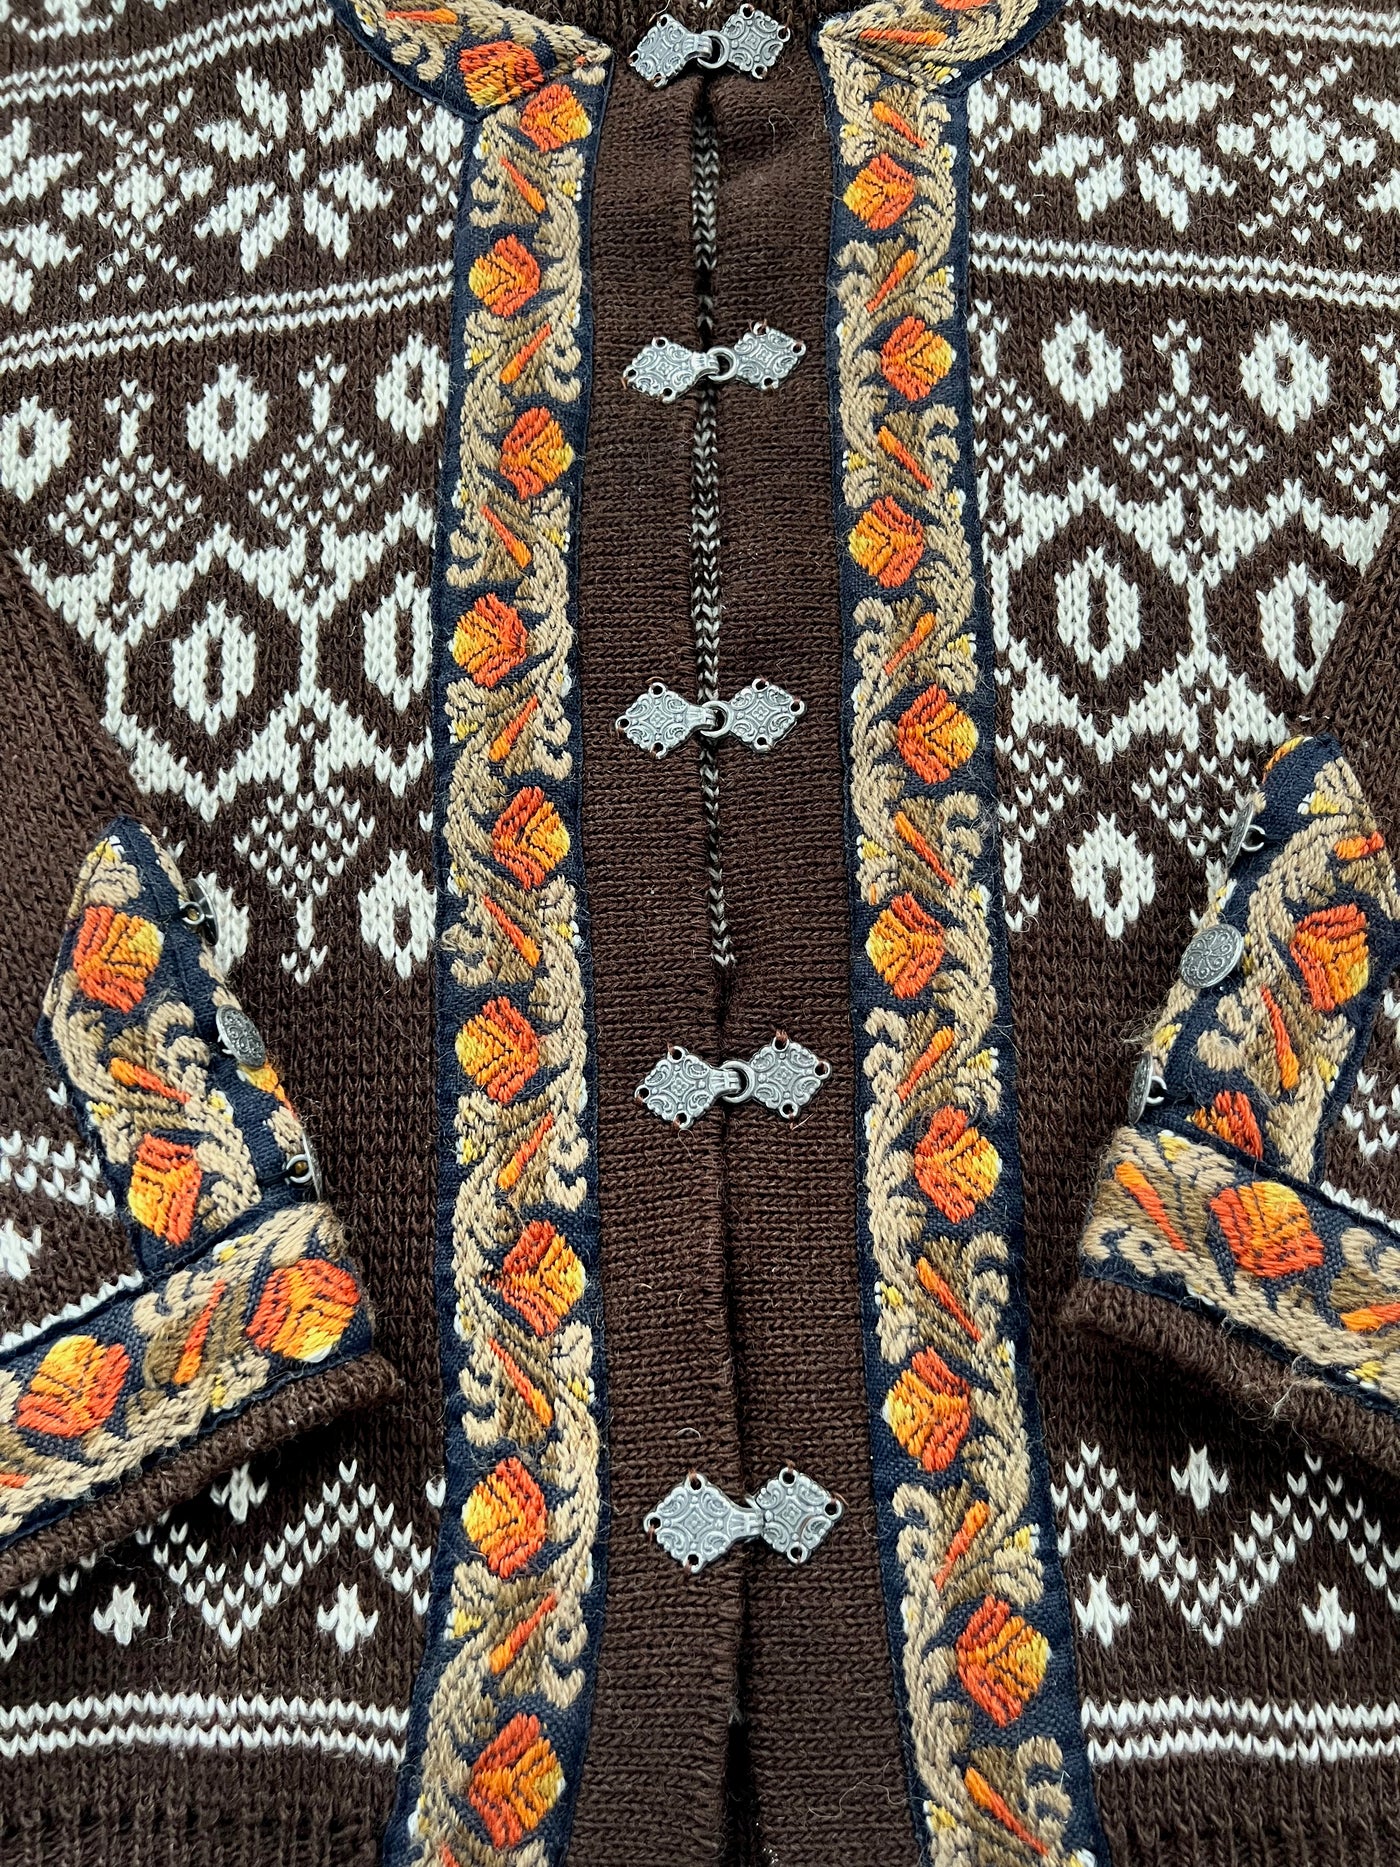 Vintage Women's Brown Gann Sporty Sweater